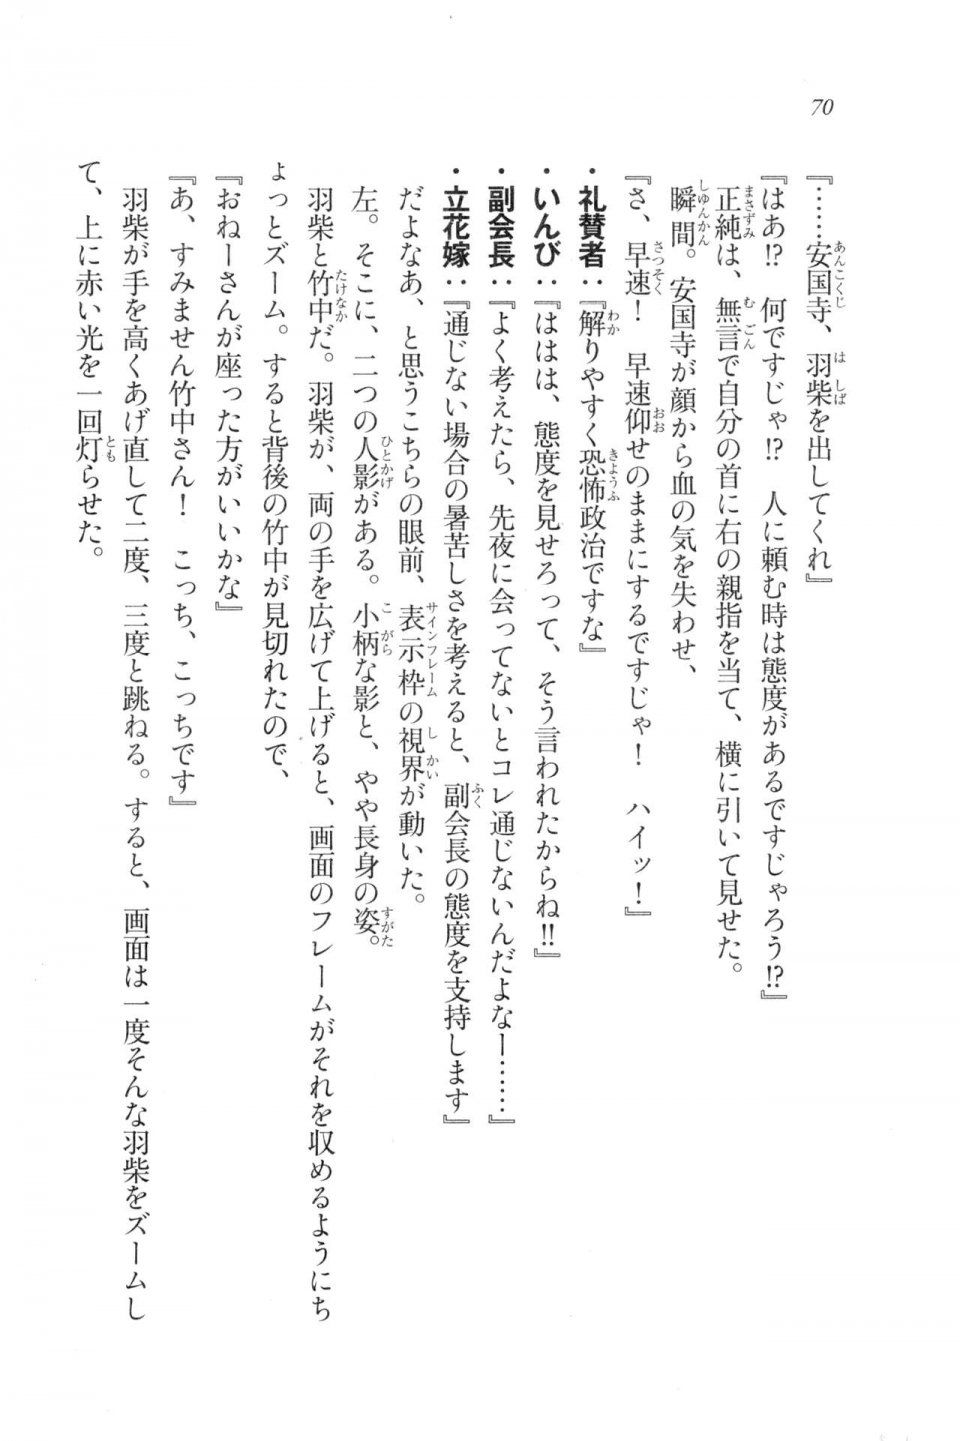 Kyoukai Senjou no Horizon LN Vol 20(8B) - Photo #70